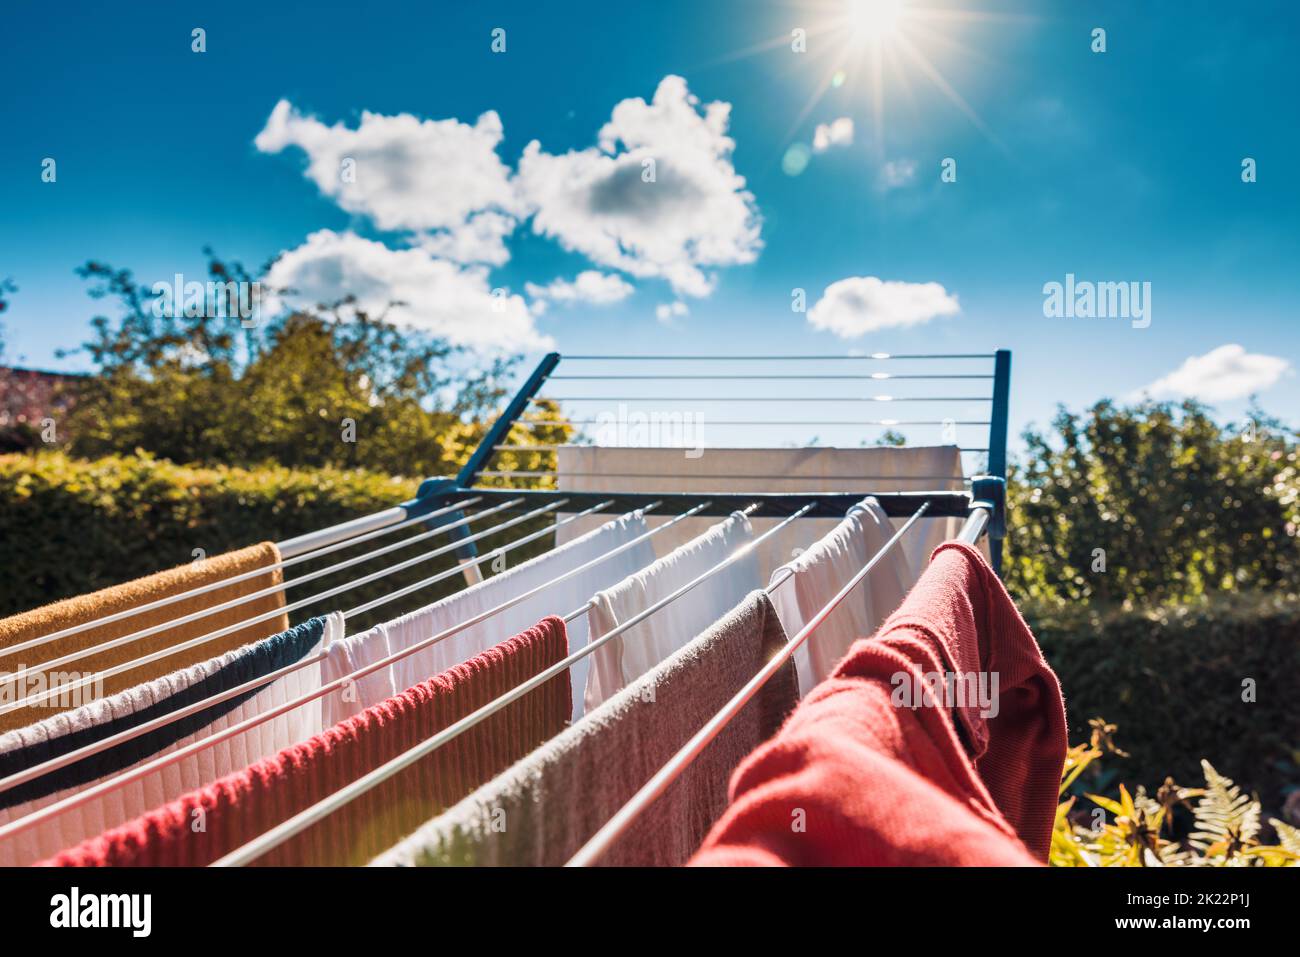 Trocknen Sie nasse Wäsche nach der Wäsche auf einem Trockengestell im Sommer in der Sonne, um Energie zu sparen, indem Sie keinen elektrischen Trockner verwenden. Stockfoto